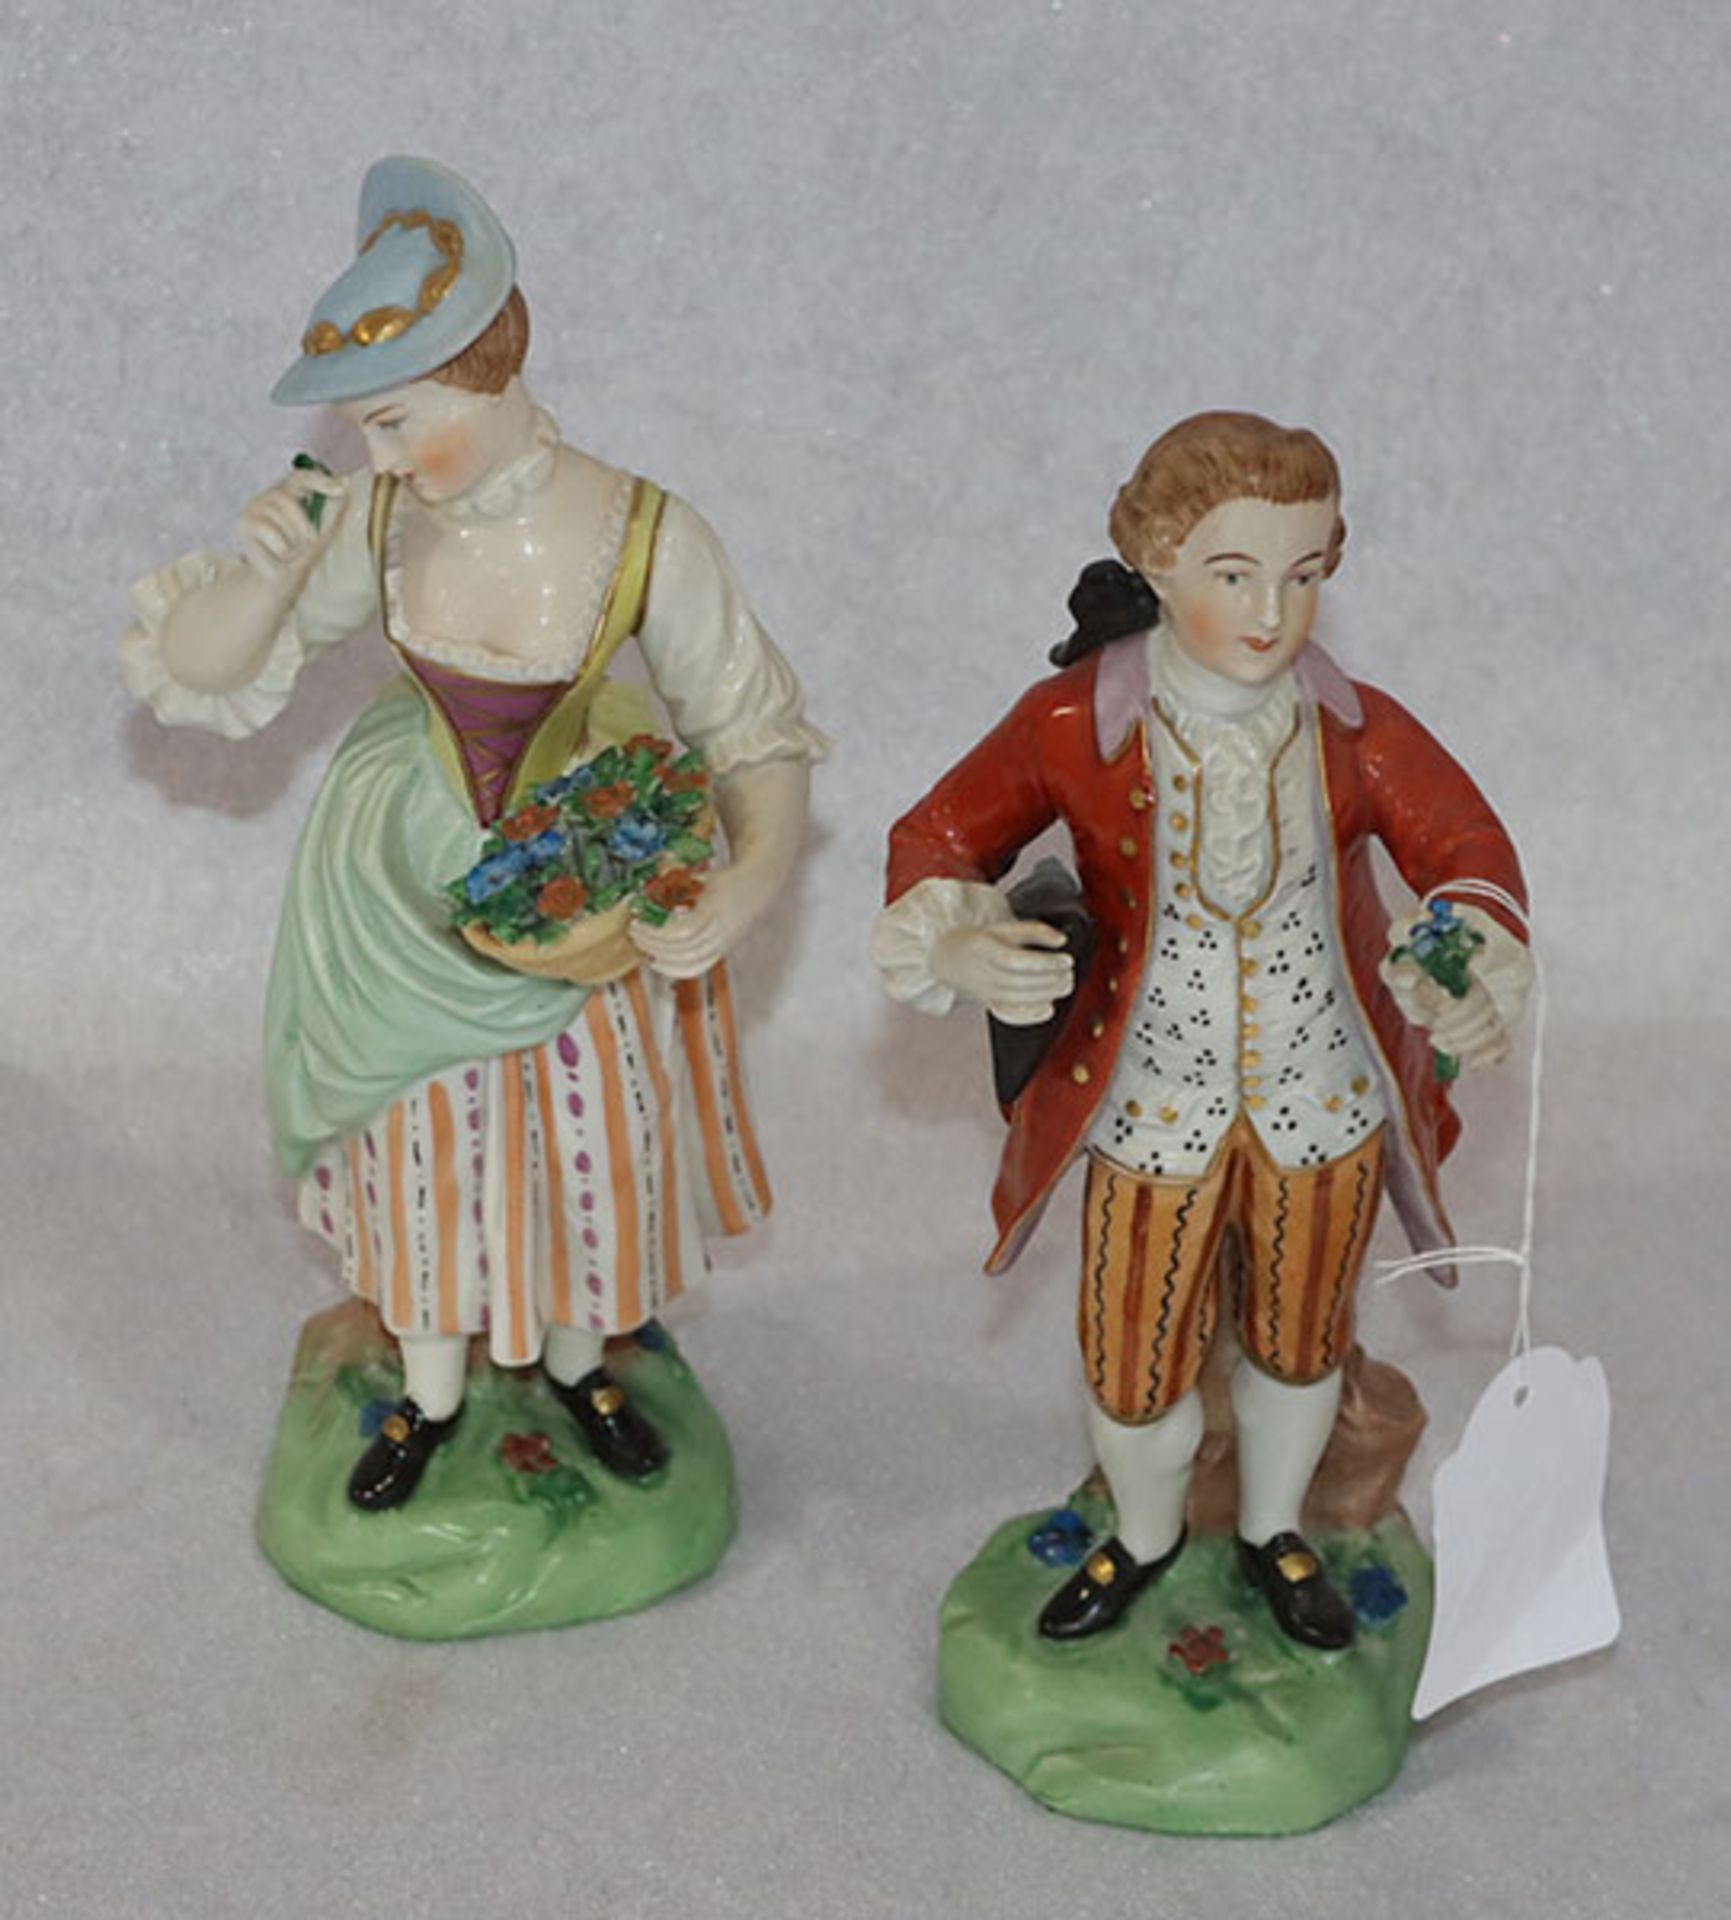 2 Dresdner Porzellan Figuren 'Paar mit Blumen', farbig bemalt, H 20 cm, leicht bestossen